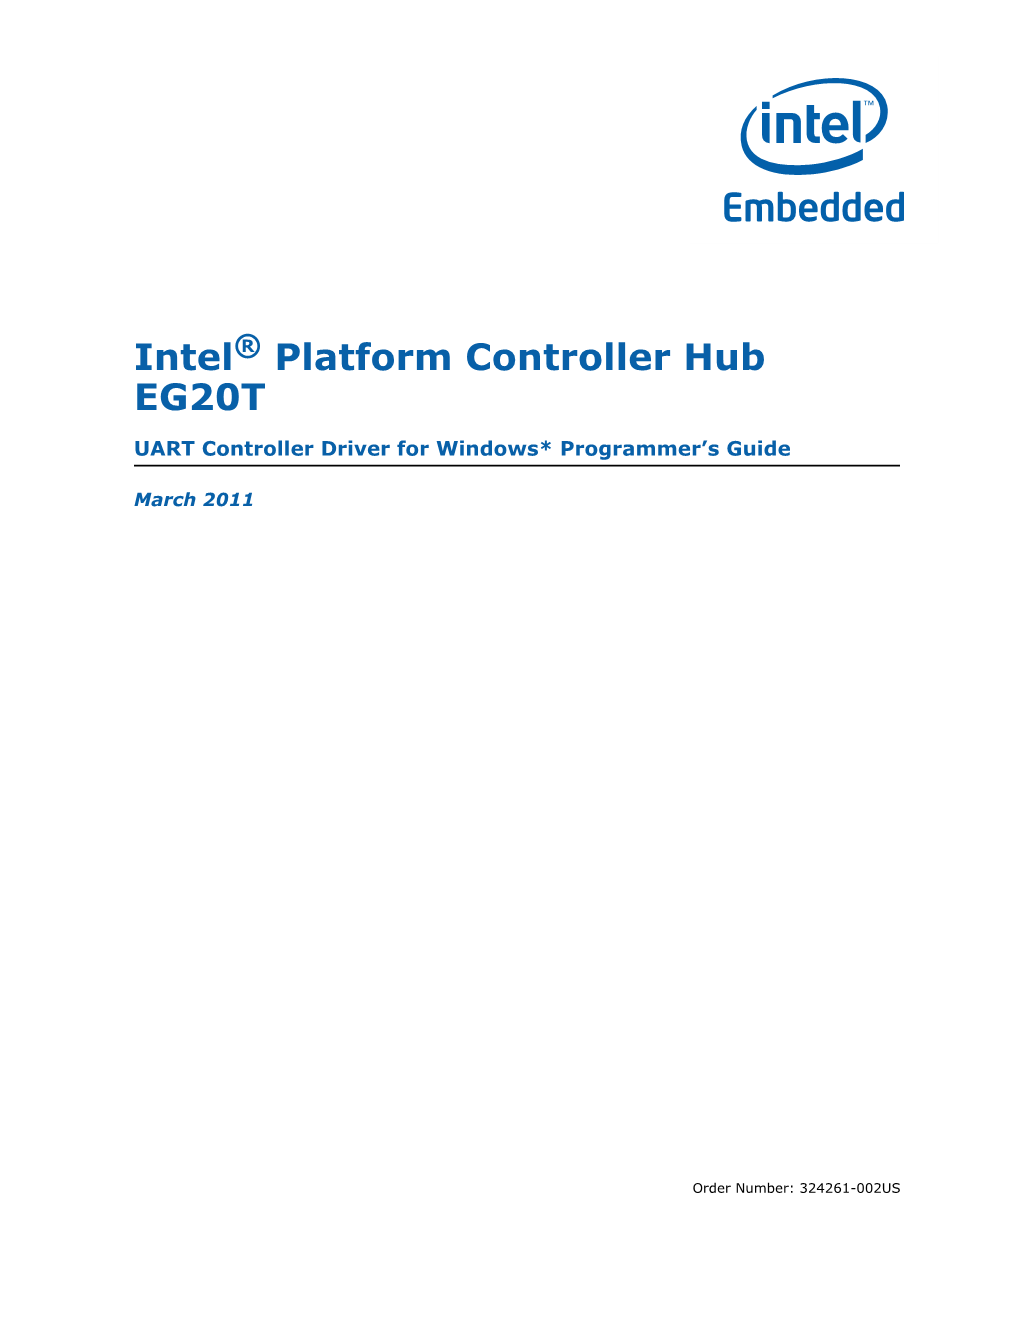 Intel® Platform Controller Hub EG20T UART Controller Driver Programmer’S Guide March 2011 2 Order Number: 324261-002US Contents—Intel® Platform Controller Hub EG20T